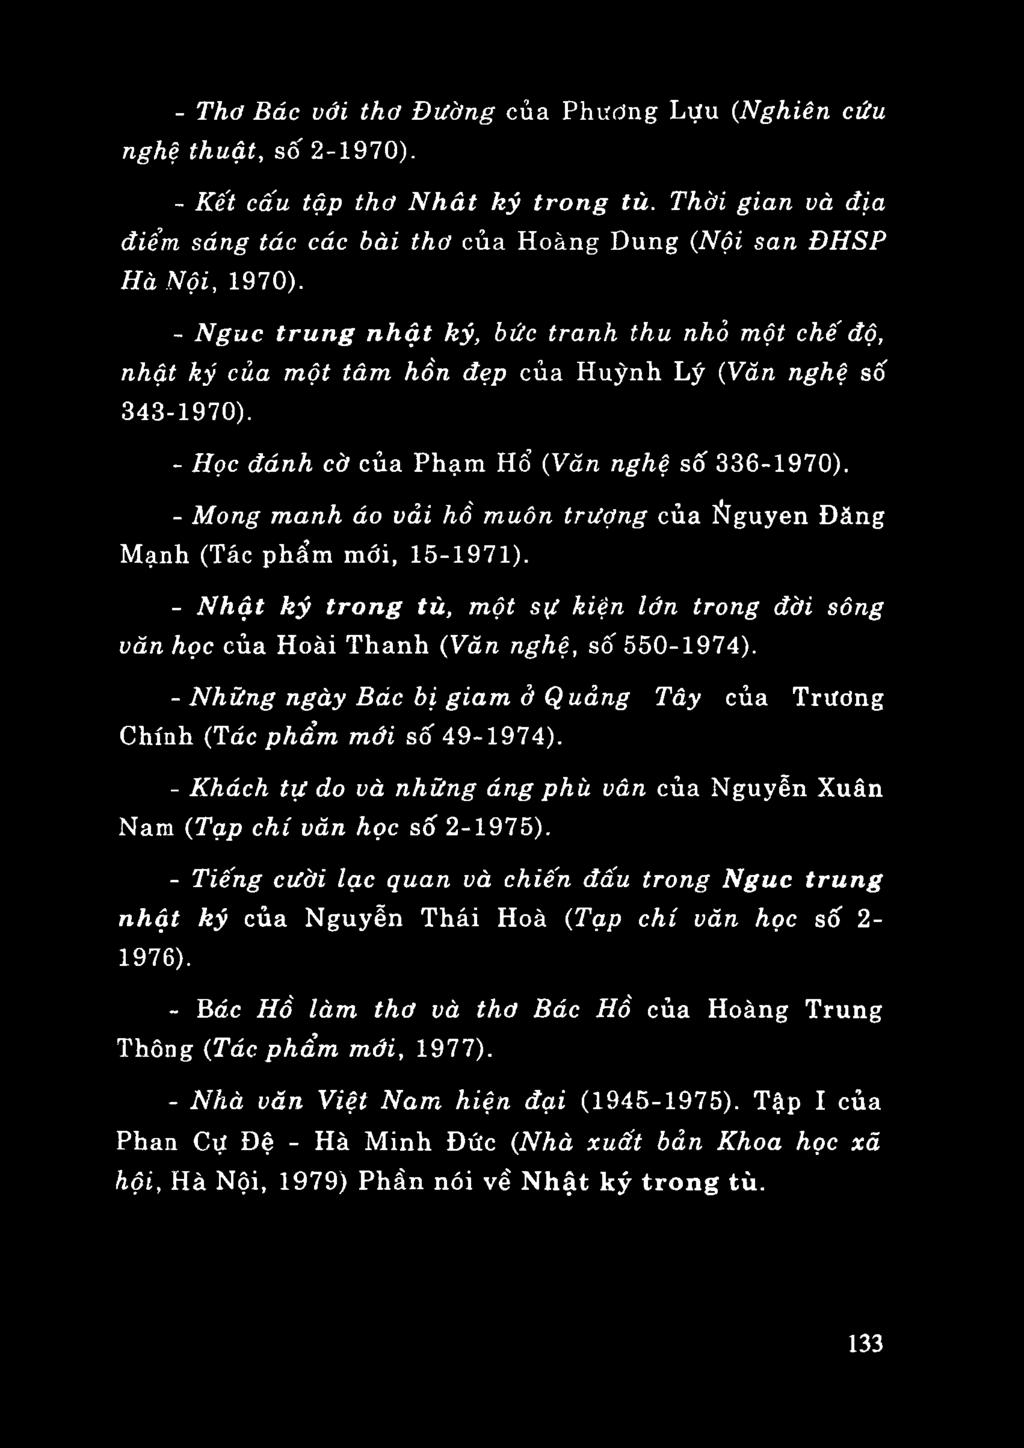 - Mong manh áo vải hồ muôn trượng của Ñguyen Đăng Mạnh (Tác phẩm mới, 15-1971). - Nhật ký trong tù, một sự kiện lớn trong đời sông văn học của Hoài Thanh (Văn nghệ, số 550-1974).